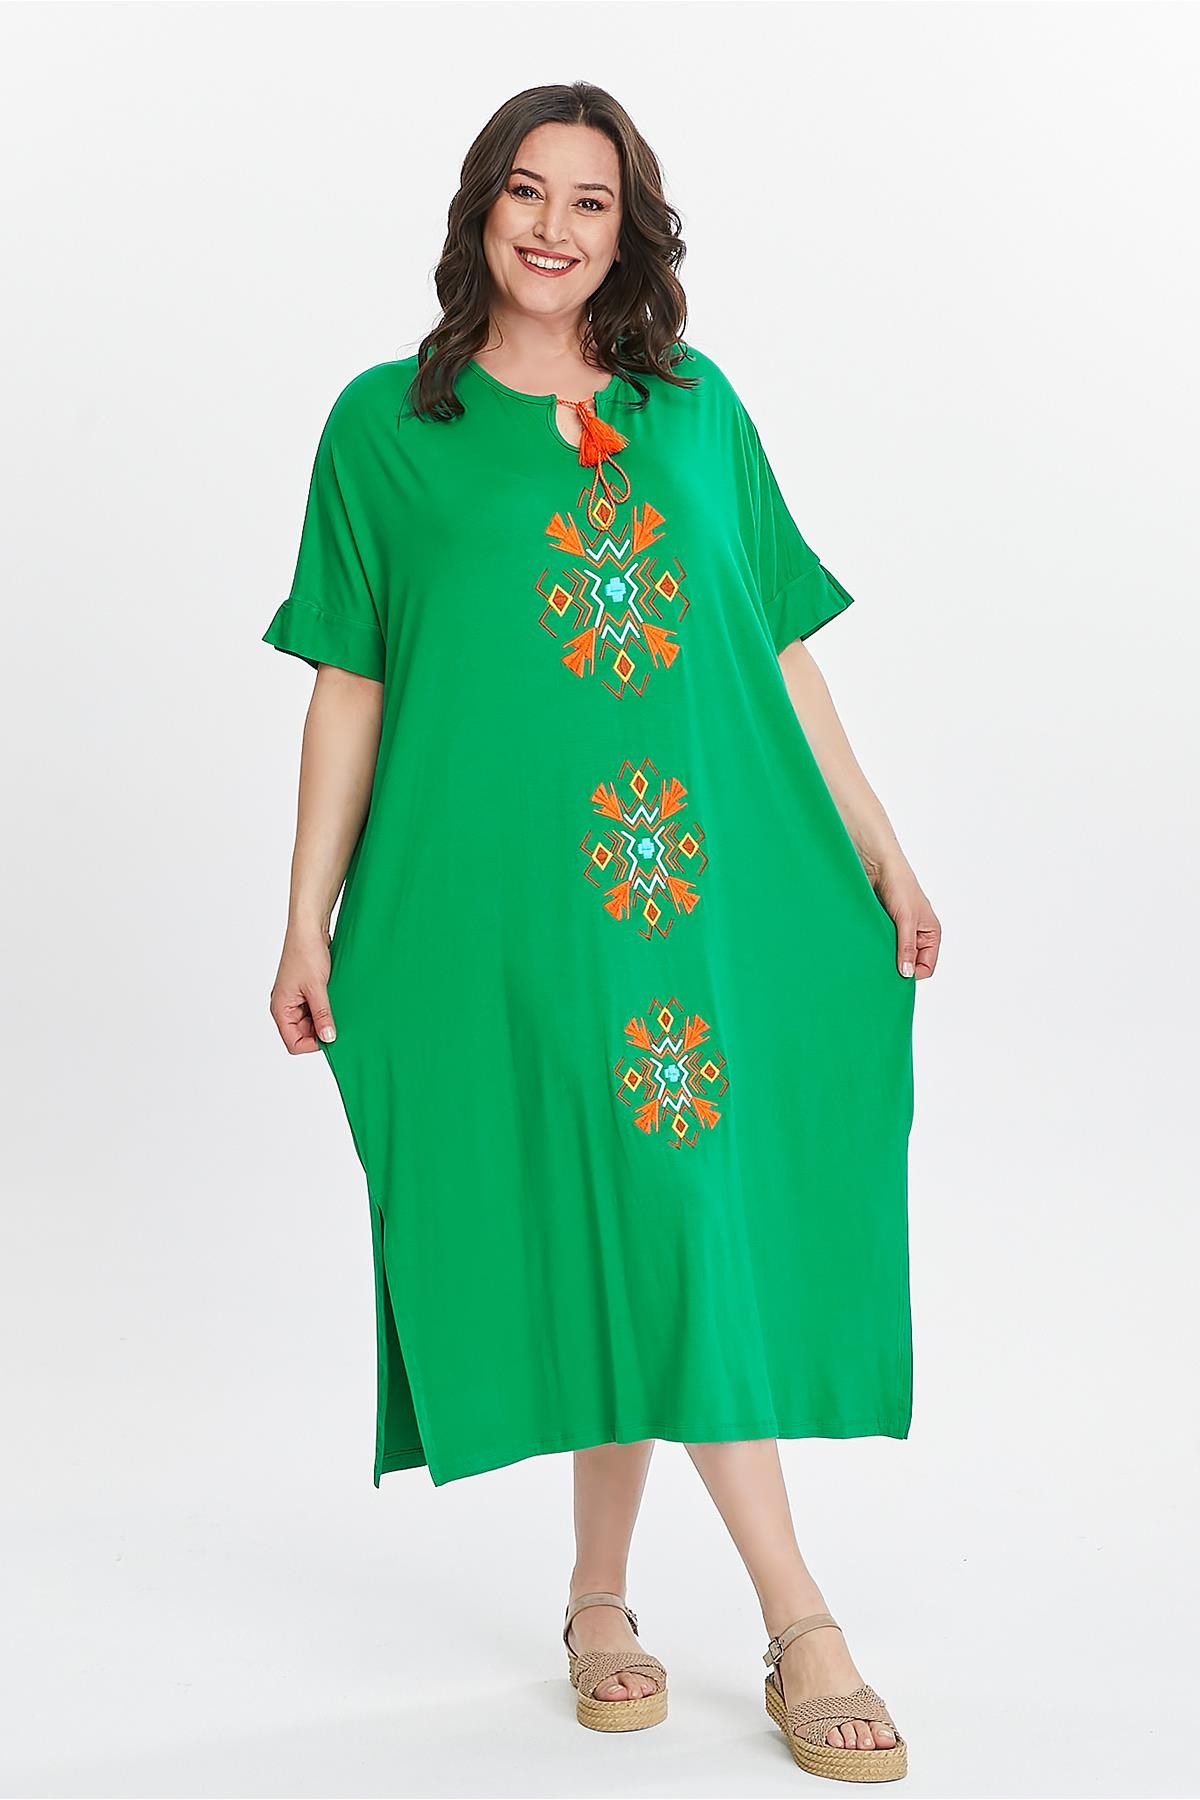 Kadın Büyük Beden Ekstra Rahat Kalıp Önü Nakışlı Elbise - Yeşil